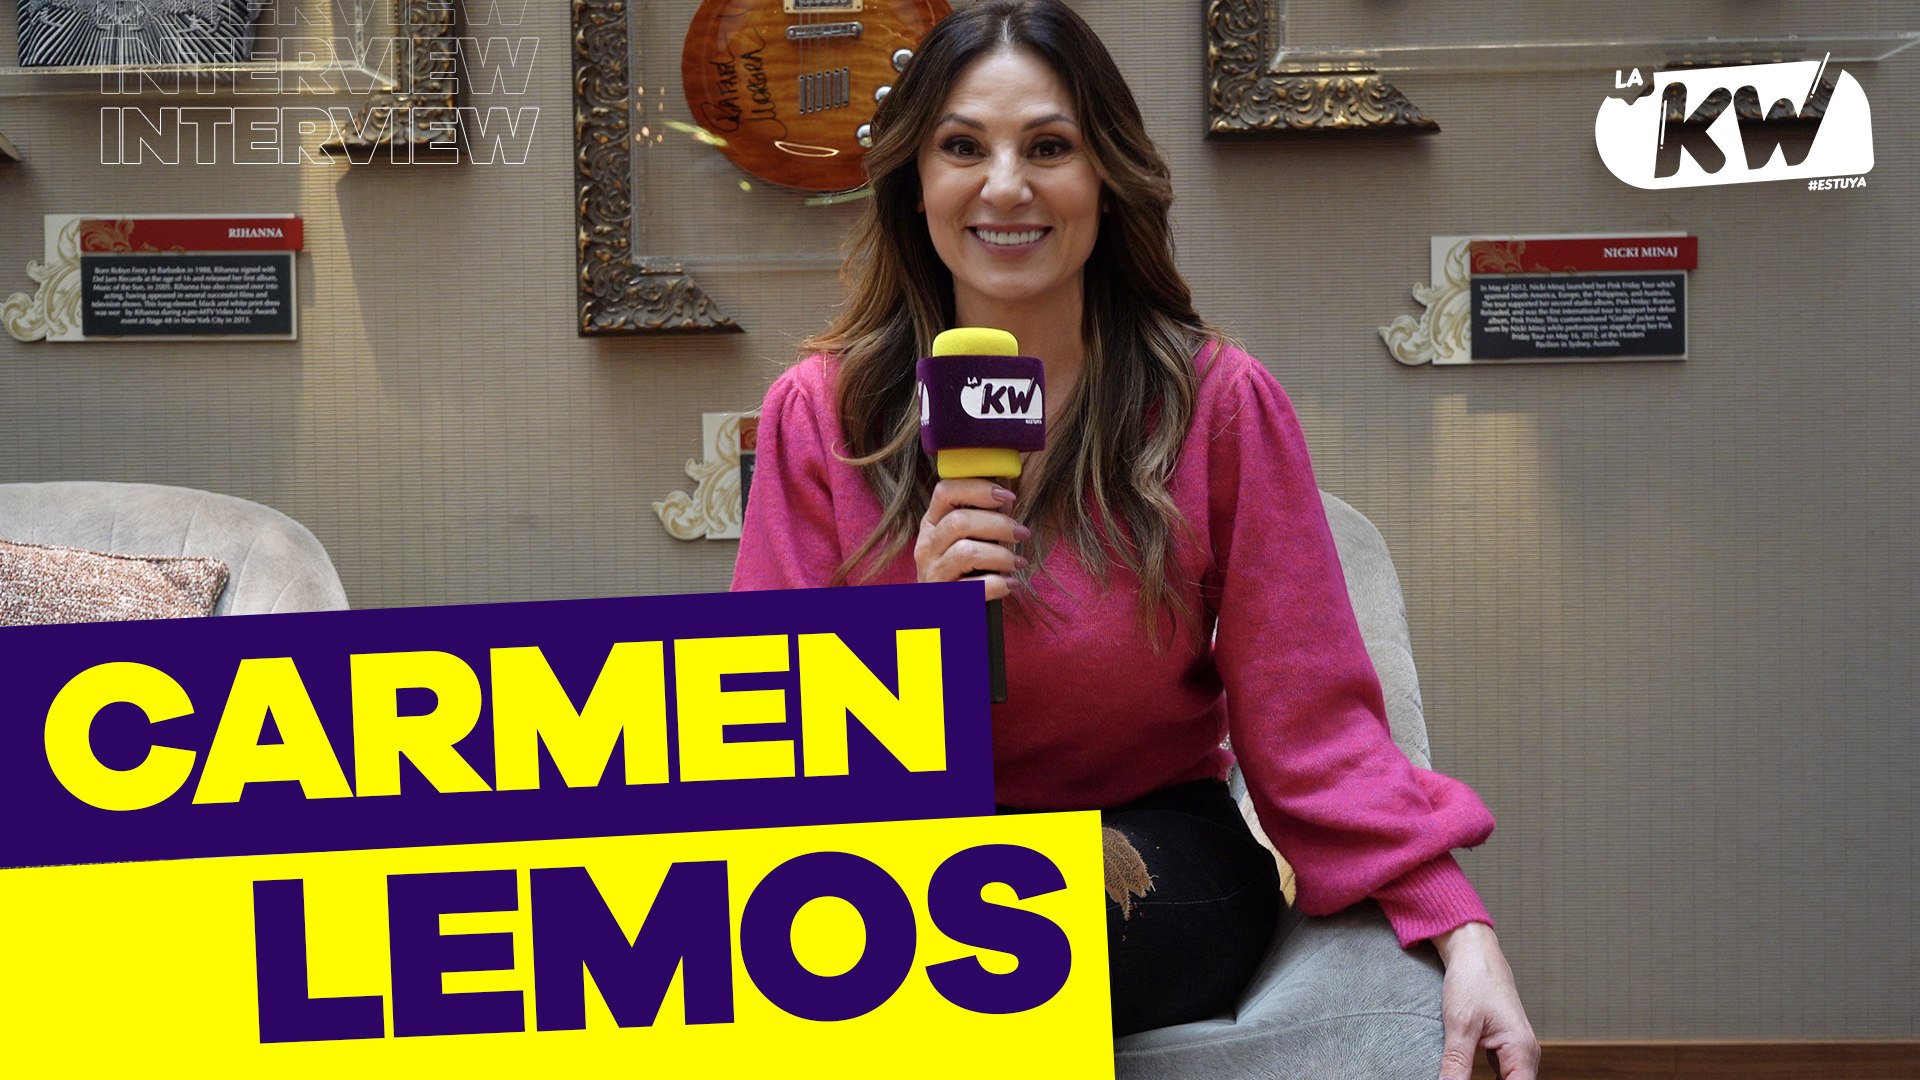 Carmen Lemos revela su alma en “La Oferta”, una oda al amor propio y la transformación